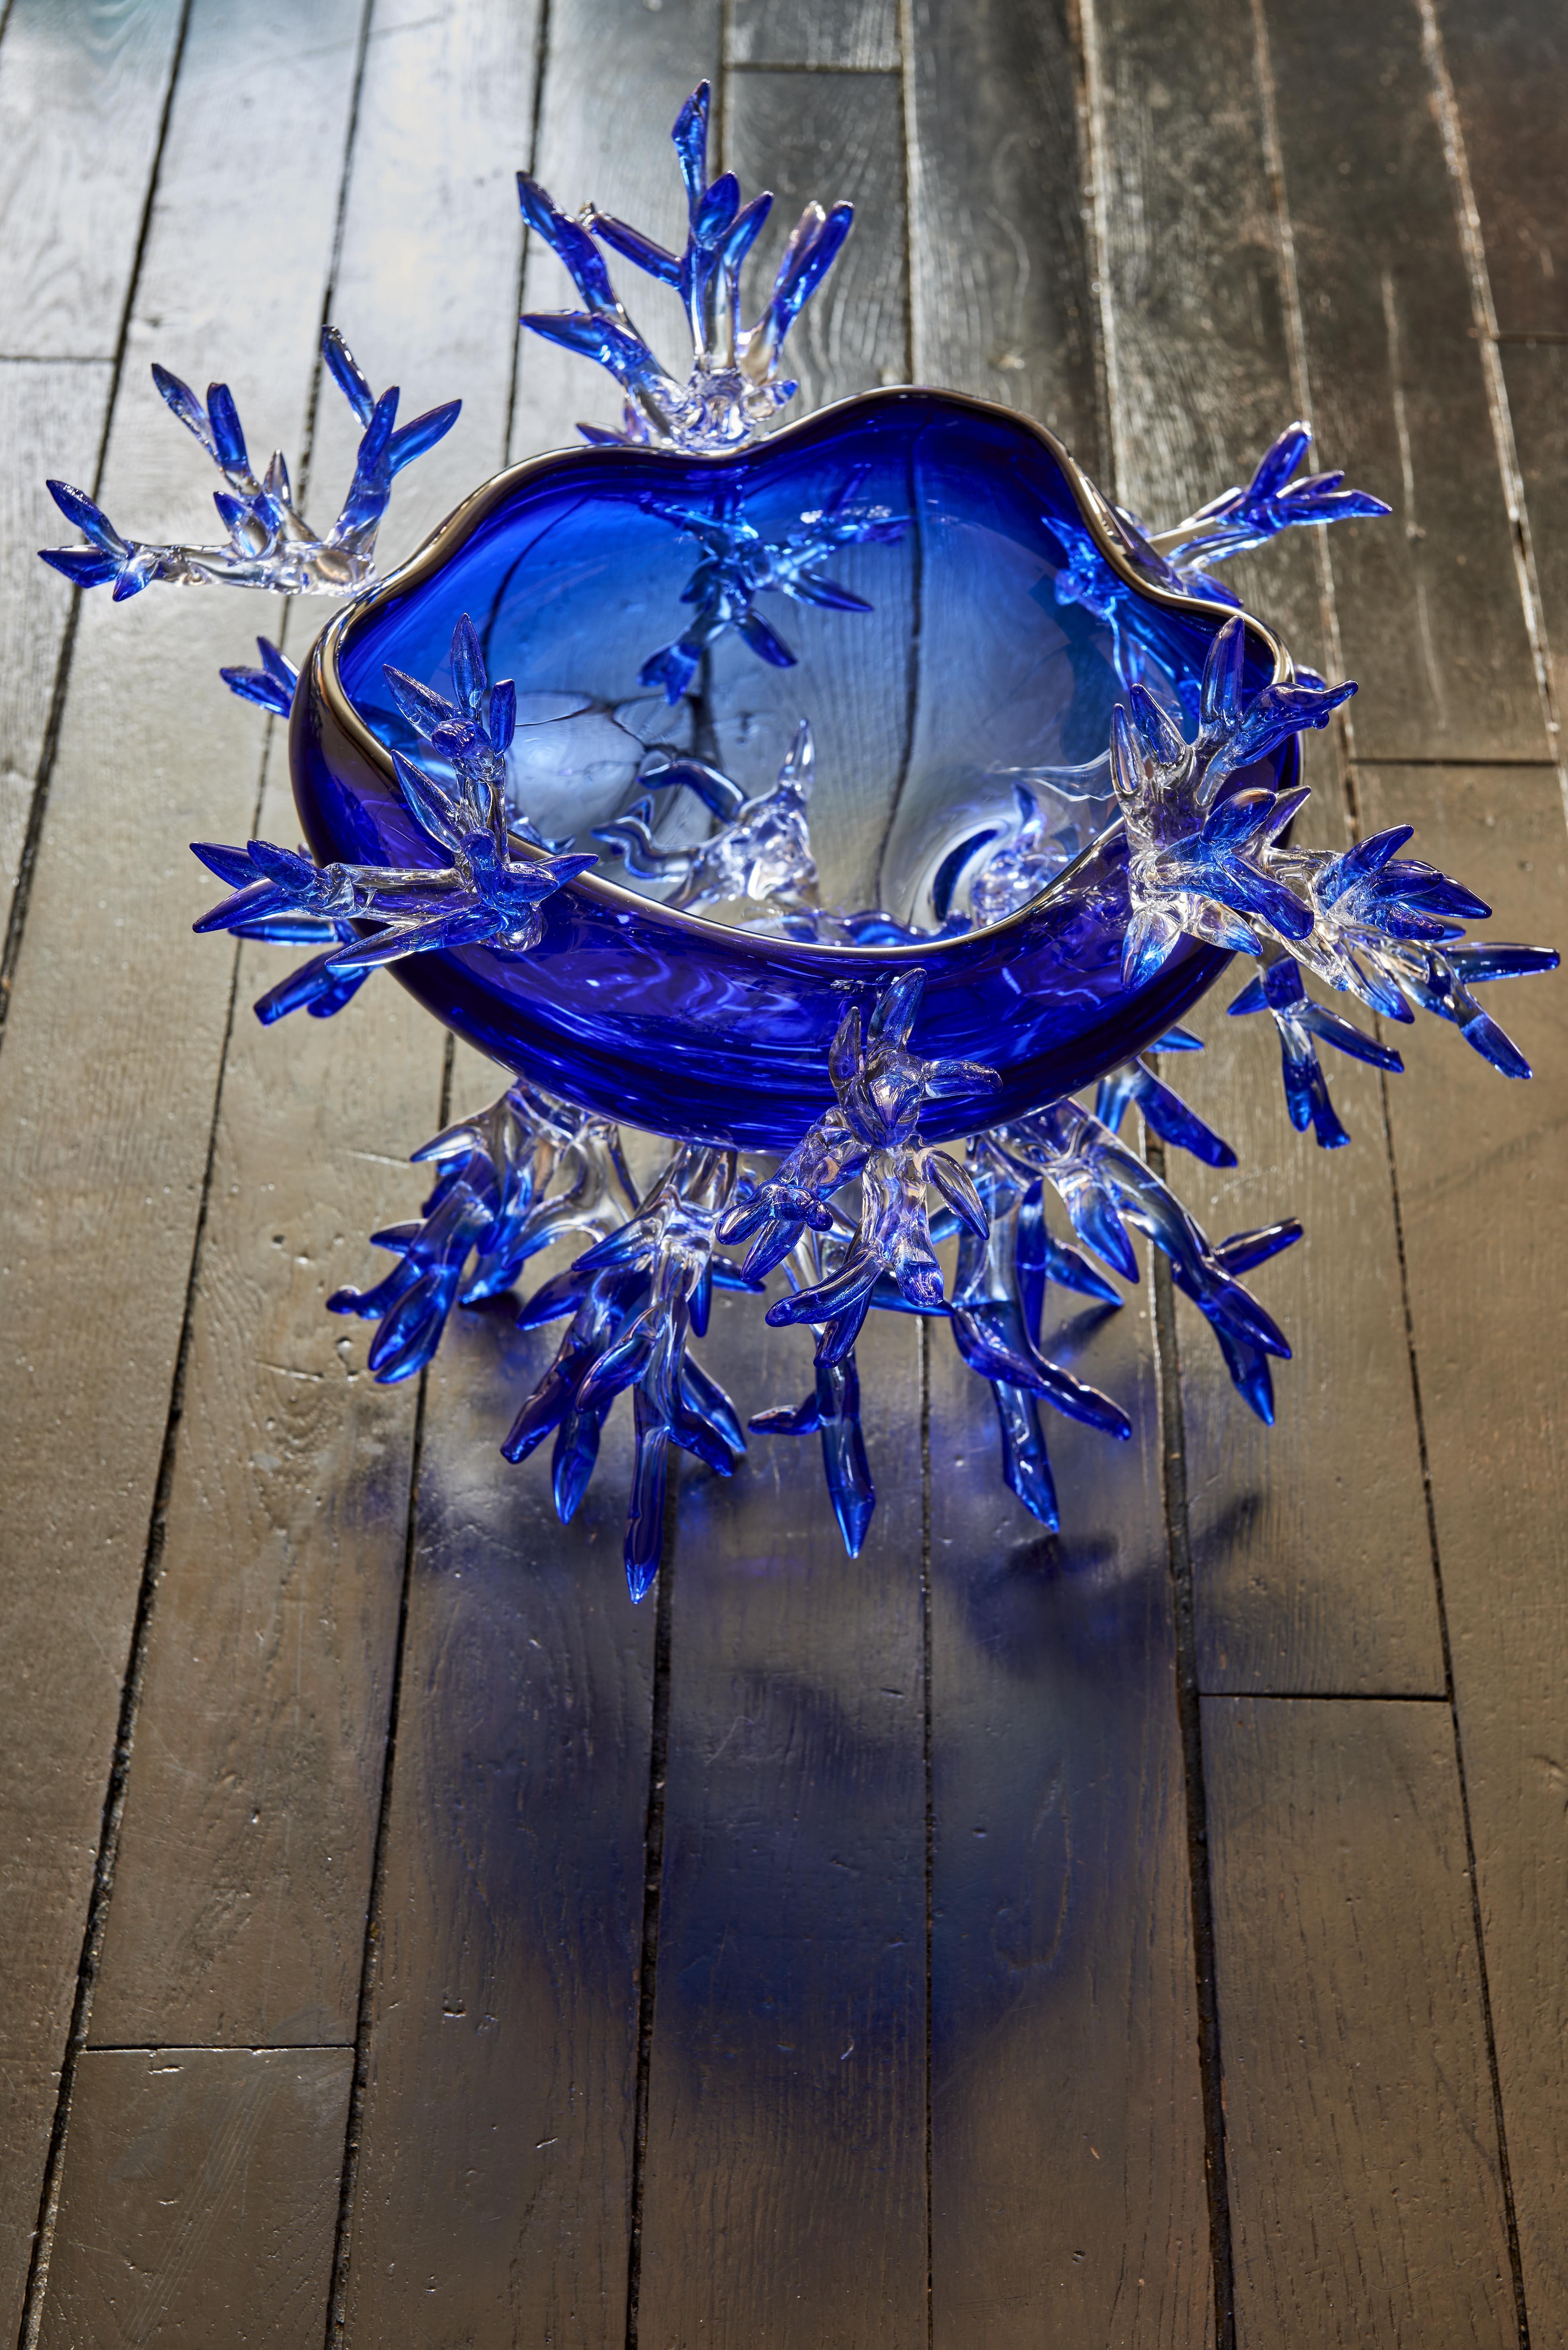 Vase in Form einer Anemone in Ultra Marin Blau von Emilie Lemardeley
Einzigartiges Stück
Abmessungen: T 40 x B 51 x H 40 cm
MATERIALIEN: Handgeblasenes Glas.

DRYADE Collection'S
Diese großen Vasen aus Kristall werden auf dünnen Ästen balanciert.